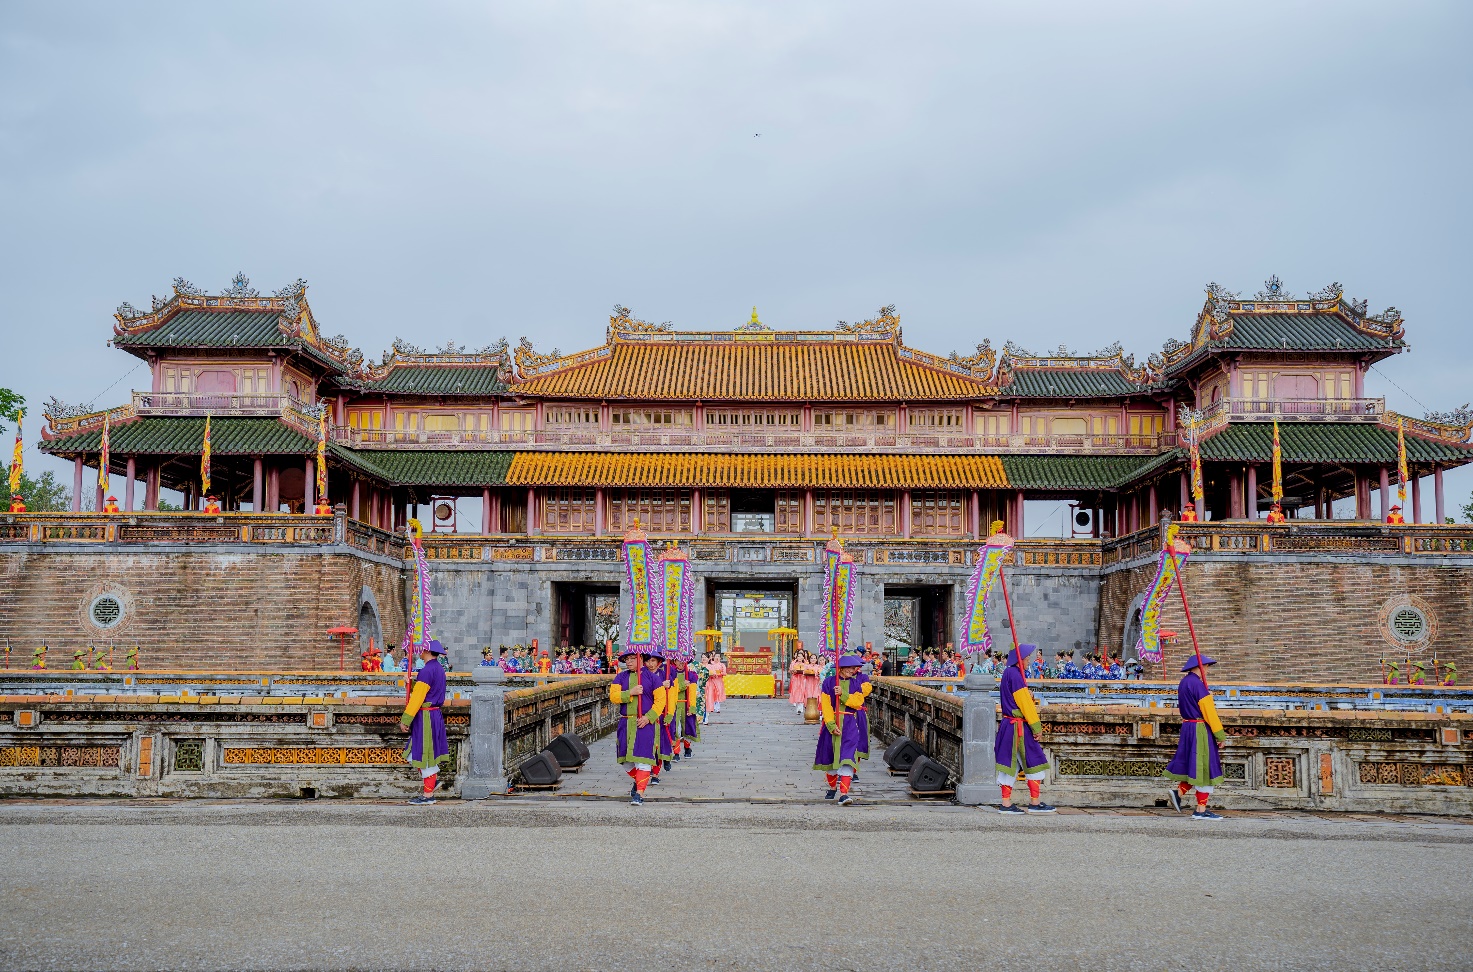 Đầu năm vào Hoàng cung Huế xem tái hiện lễ Ban sóc triều Nguyễn - 10